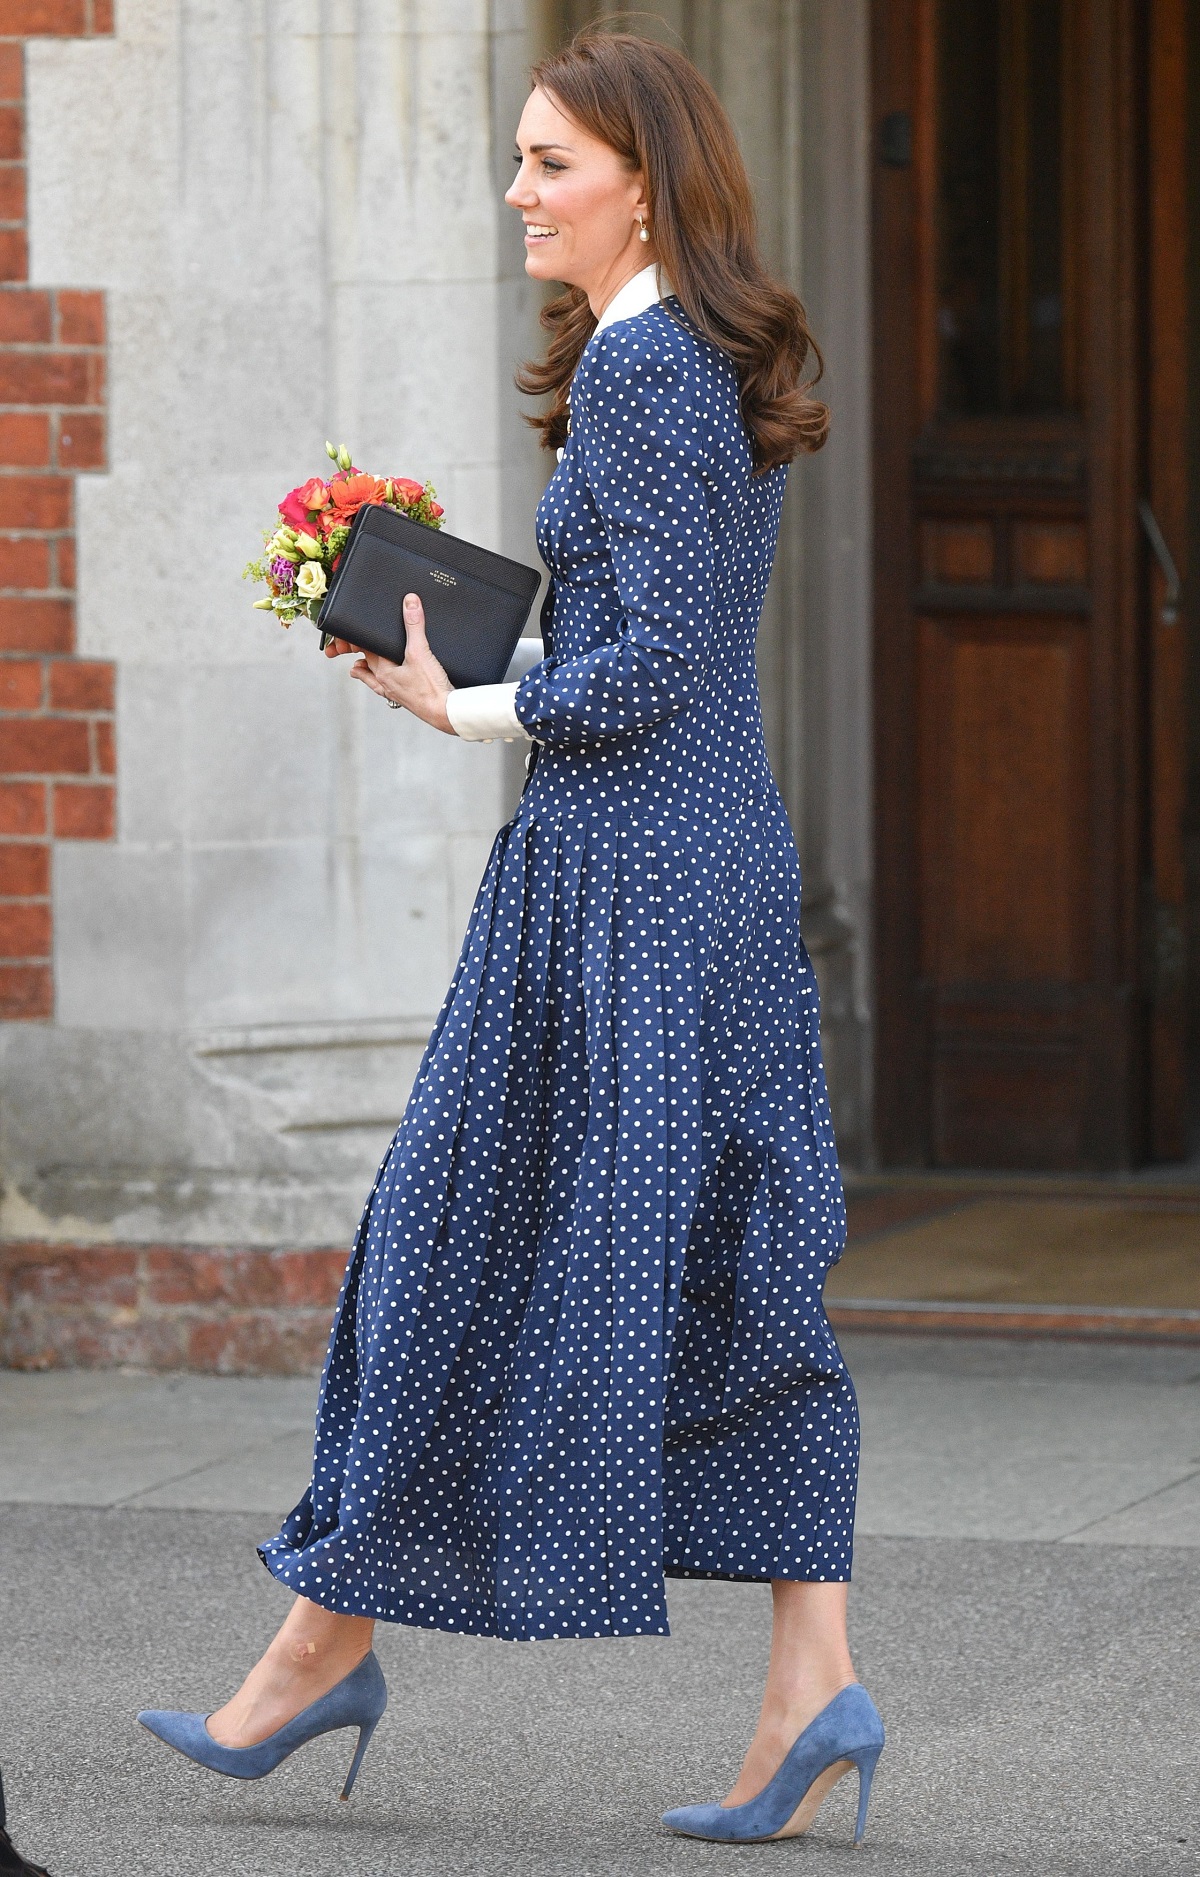 Kate Middleton în timp ce merge și poartă o rochie albastră cu buline albe la o plimbare prin parcul Bletchley